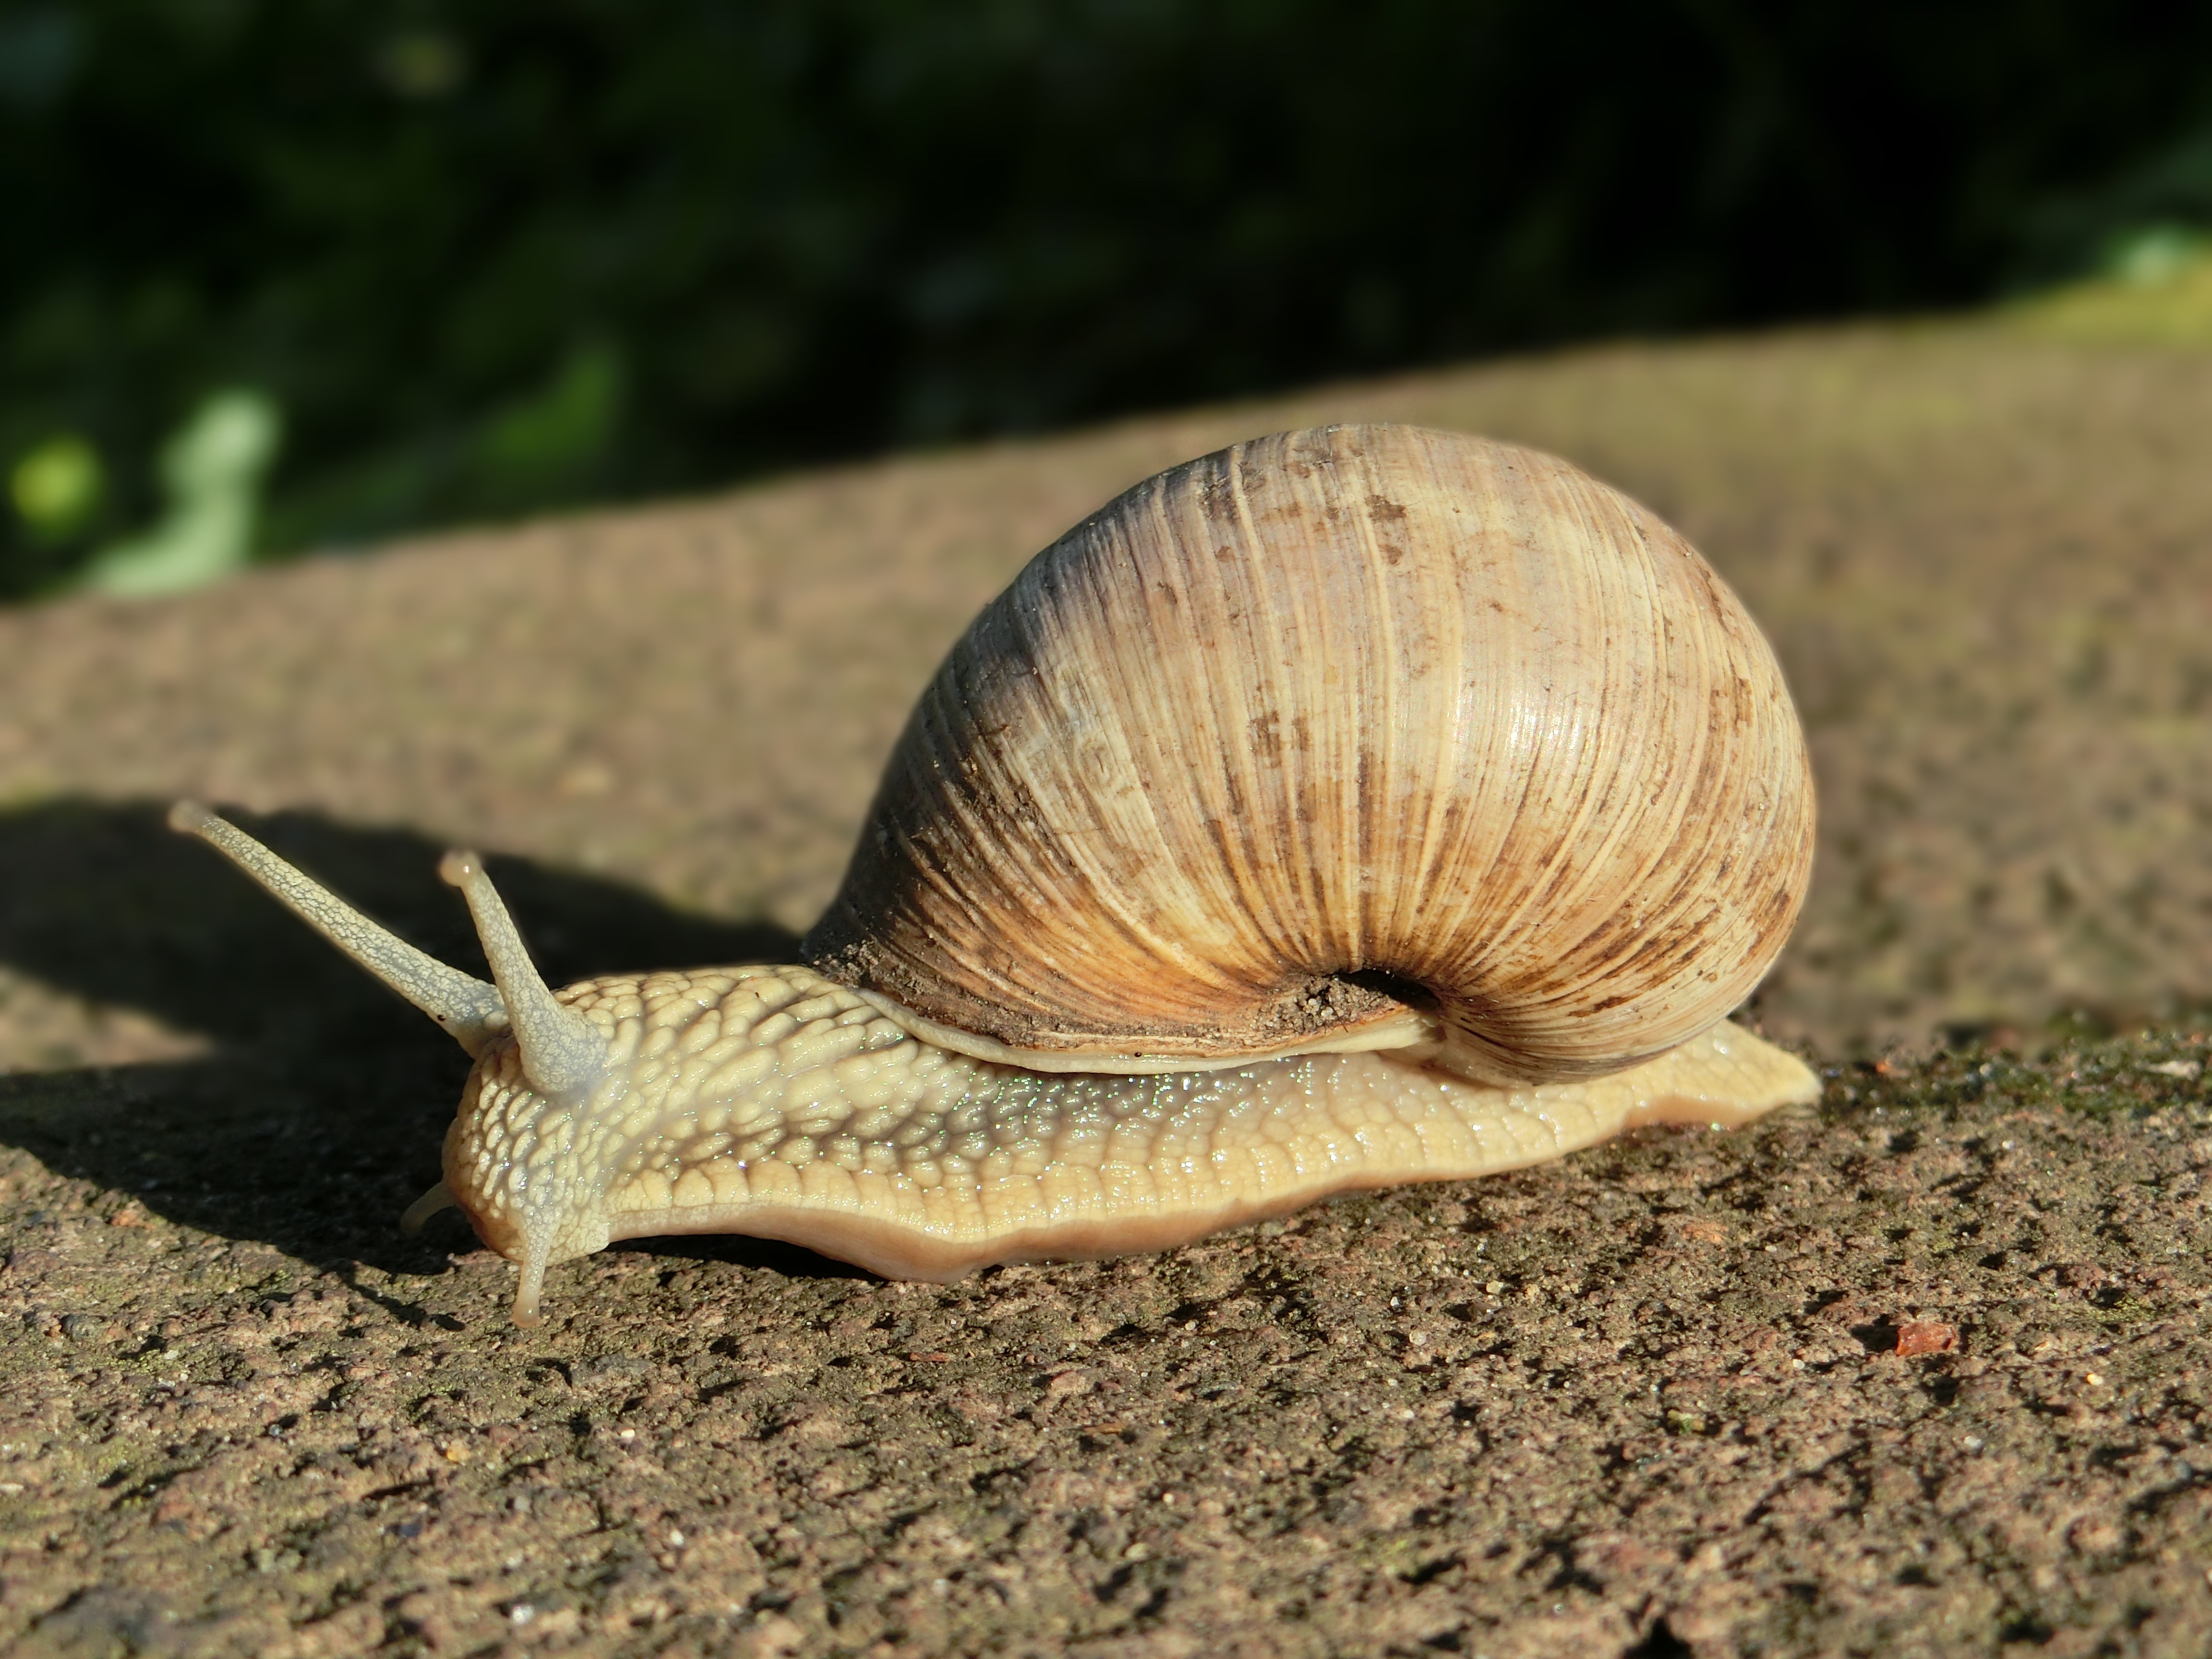 brown snail during daytime